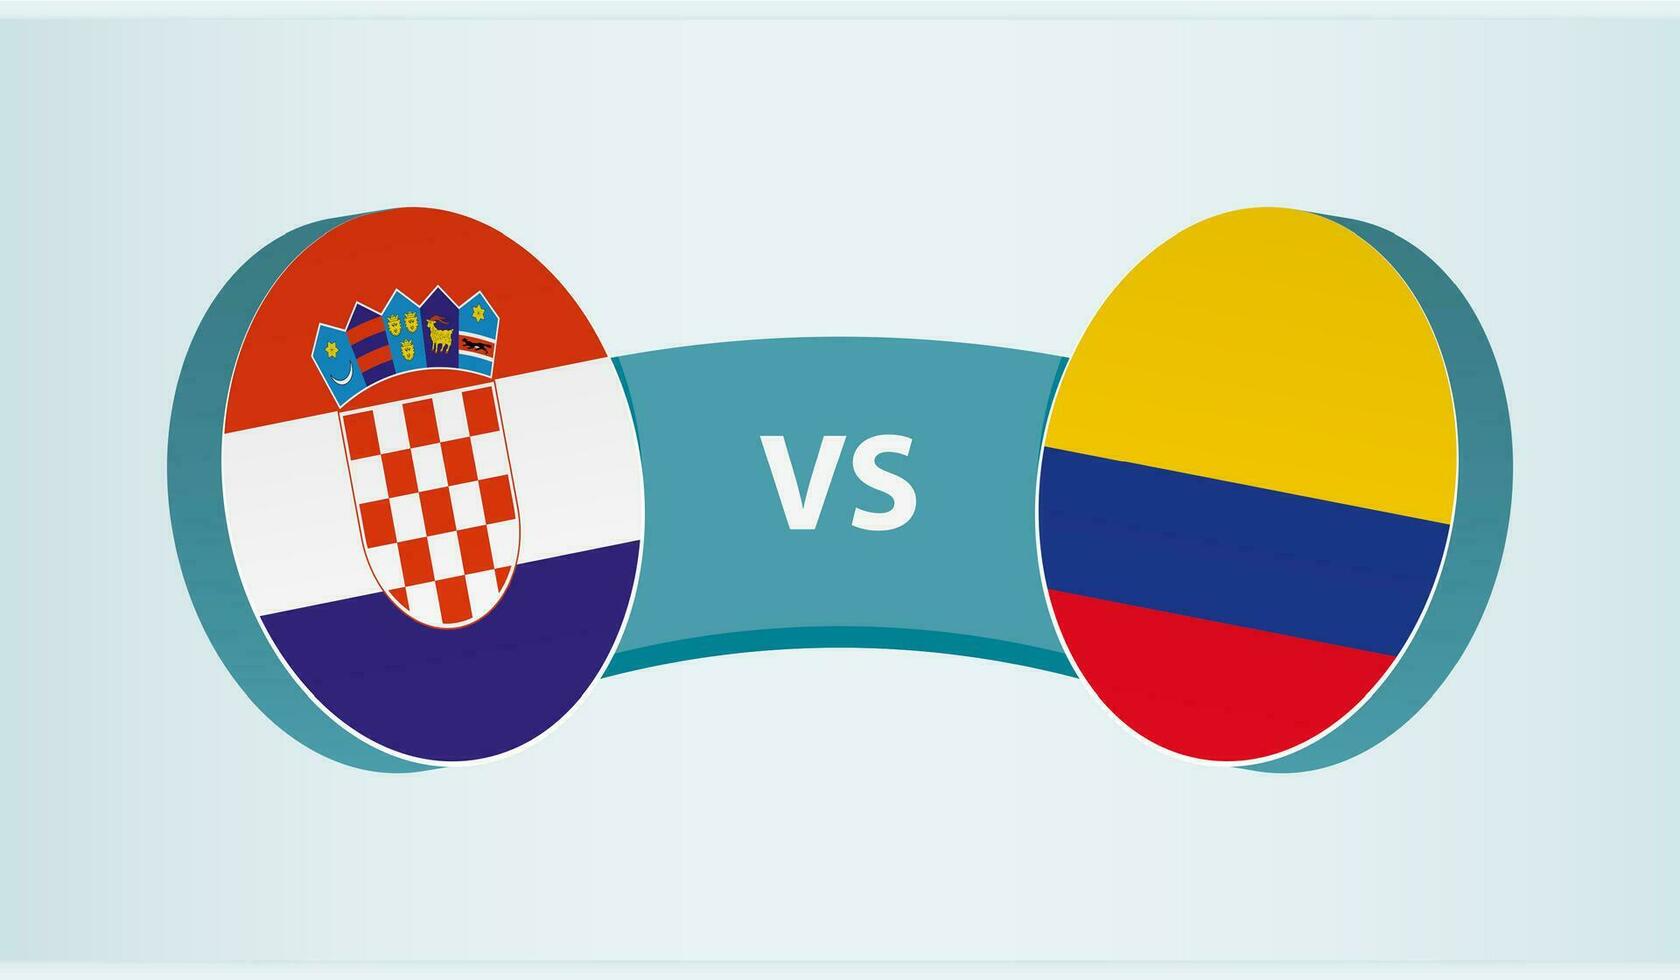 kroatien mot colombia, team sporter konkurrens begrepp. vektor